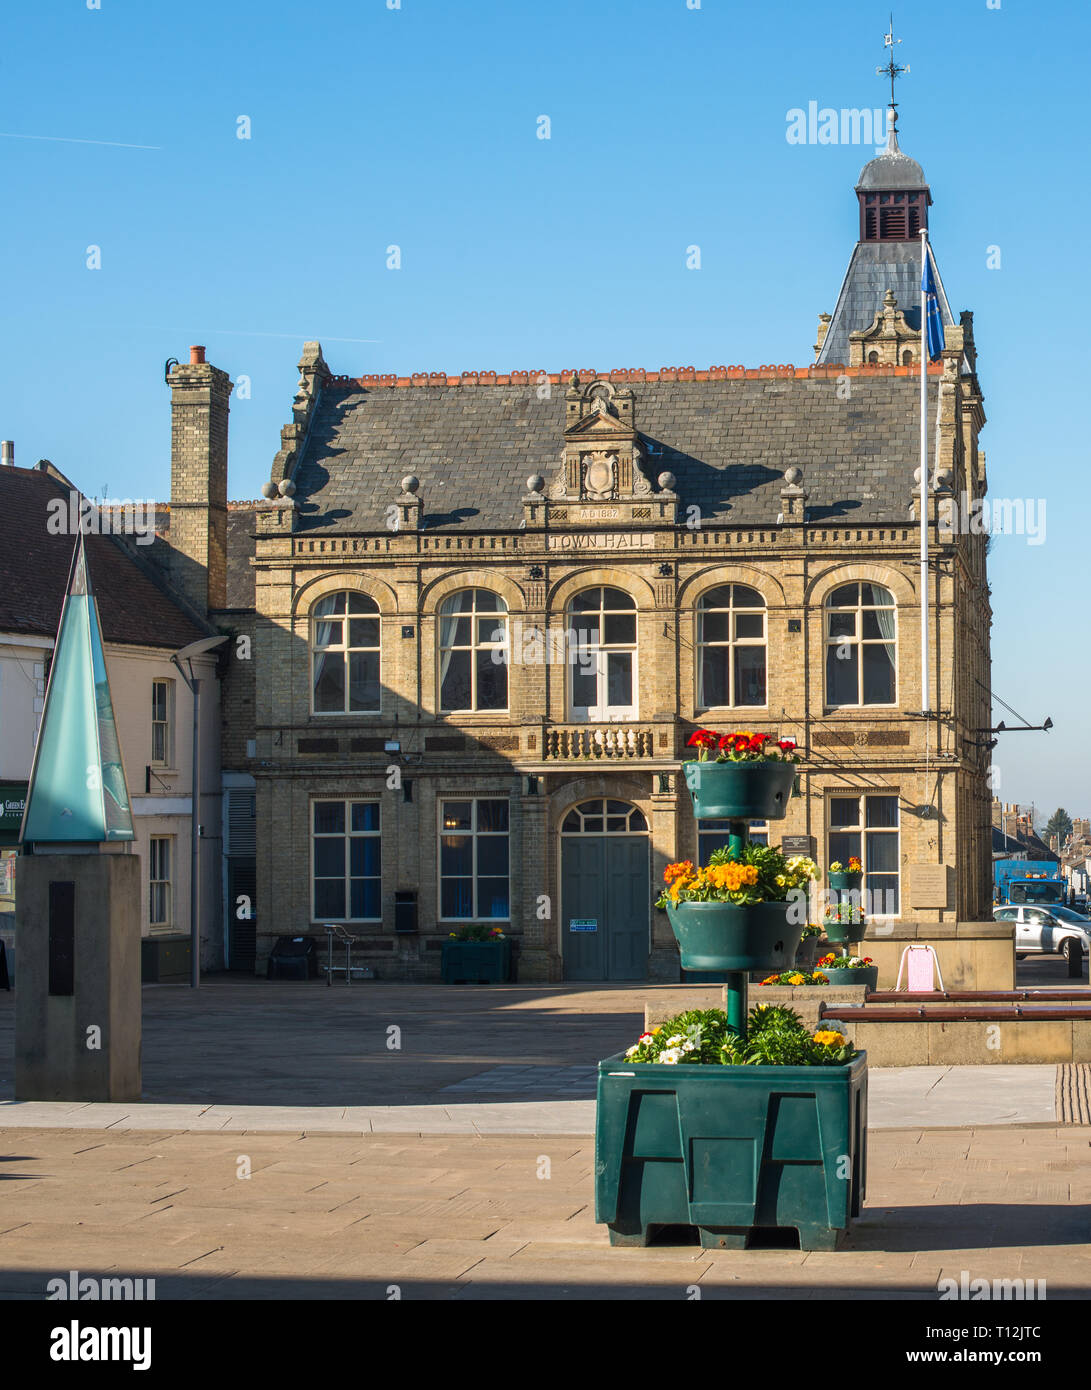 Marktplatz mit dem Rathaus in Downham Market, Norfolk, East Anglia, England, UK. Stockfoto